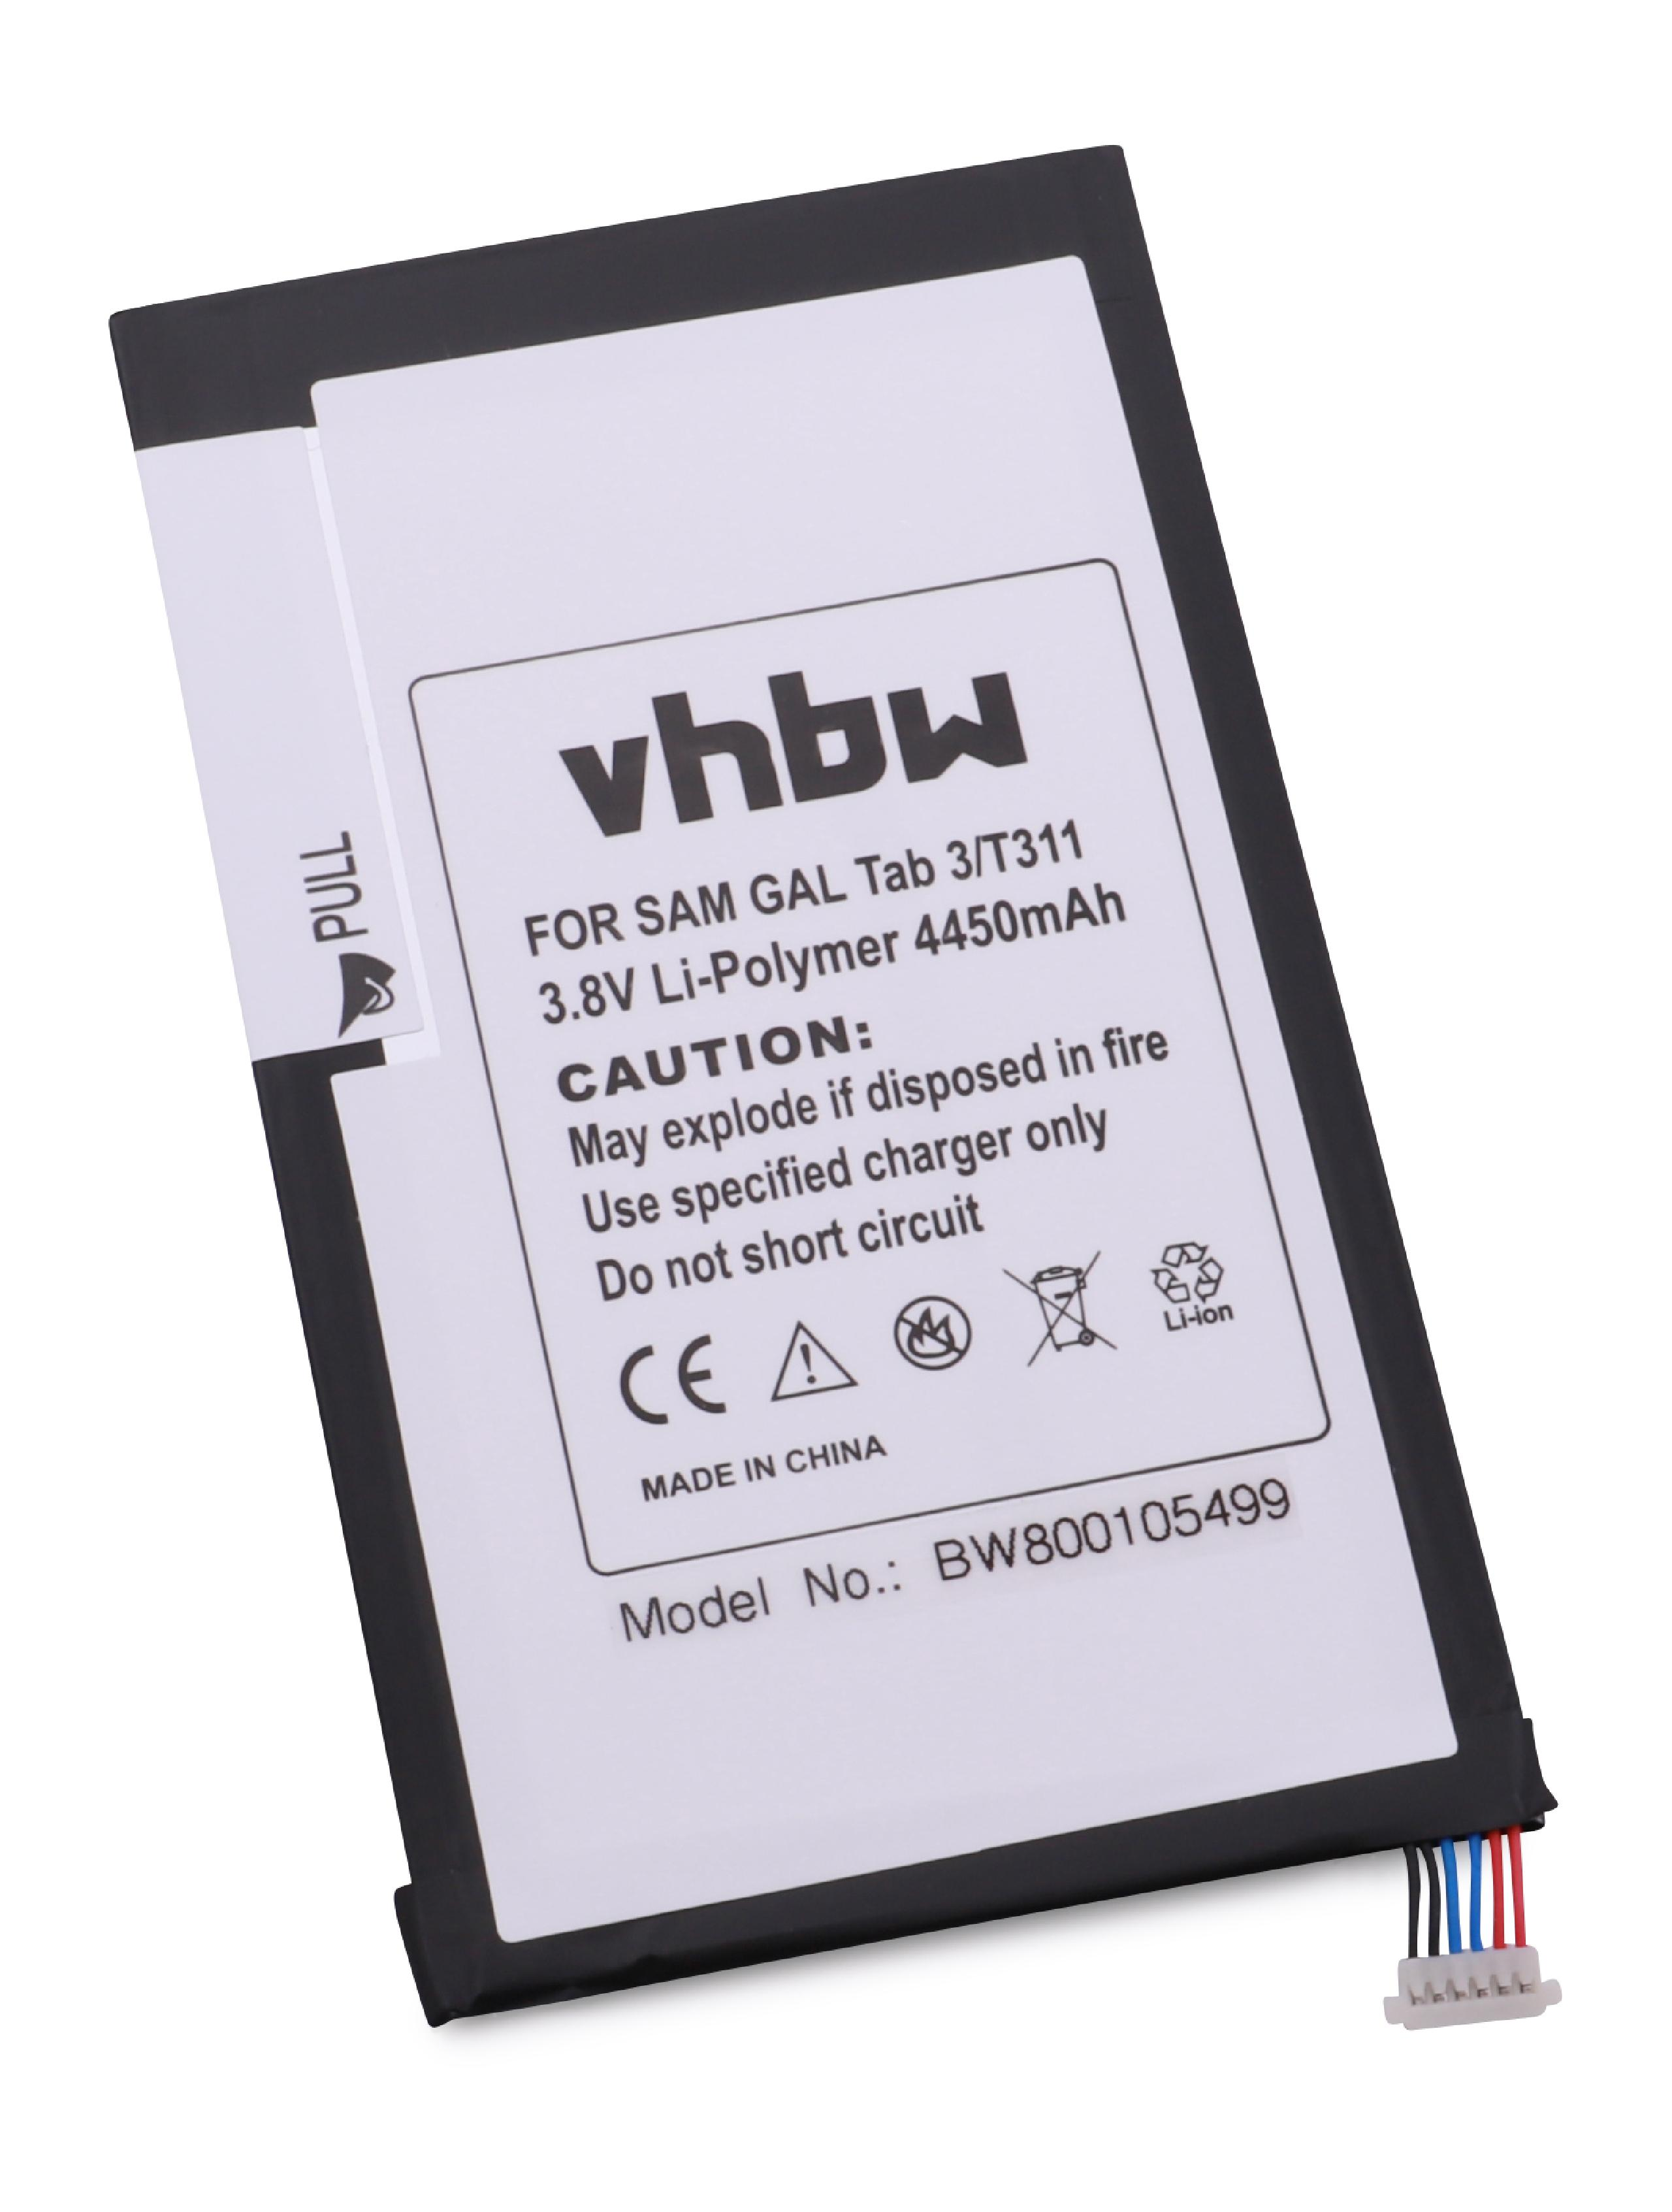 VHBW Ersatz für Samsung AAaD415JS/7-B, für - 3.8 Li-Polymer Akku SP3379D1H Tablet, Volt, 4450